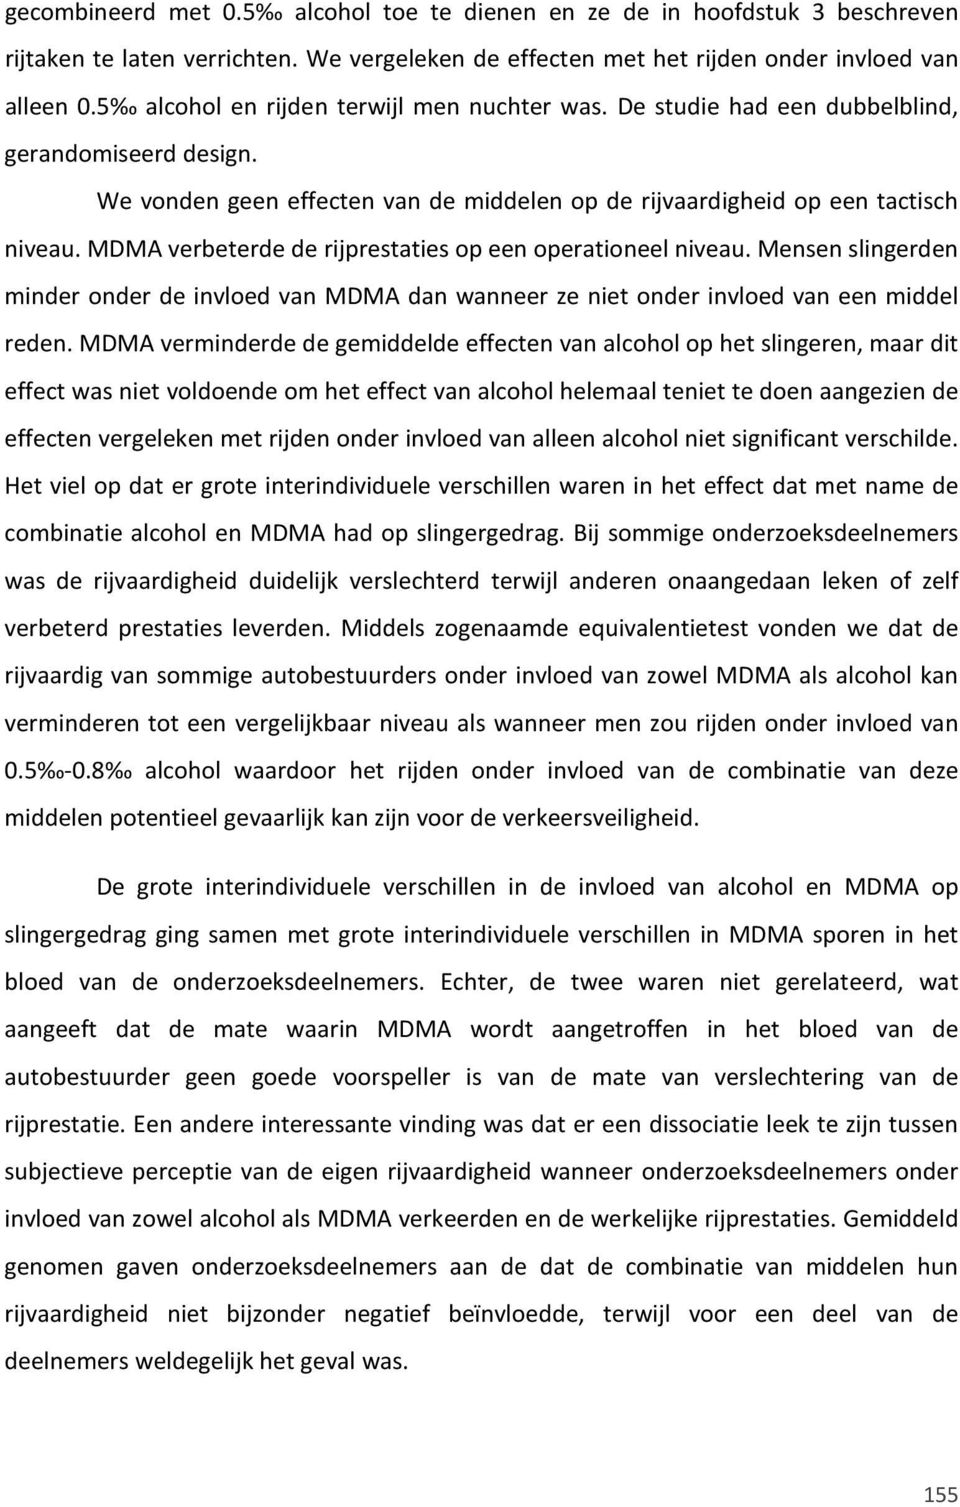 MDMA verbeterde de rijprestaties op een operationeel niveau. Mensen slingerden minder onder de invloed van MDMA dan wanneer ze niet onder invloed van een middel reden.